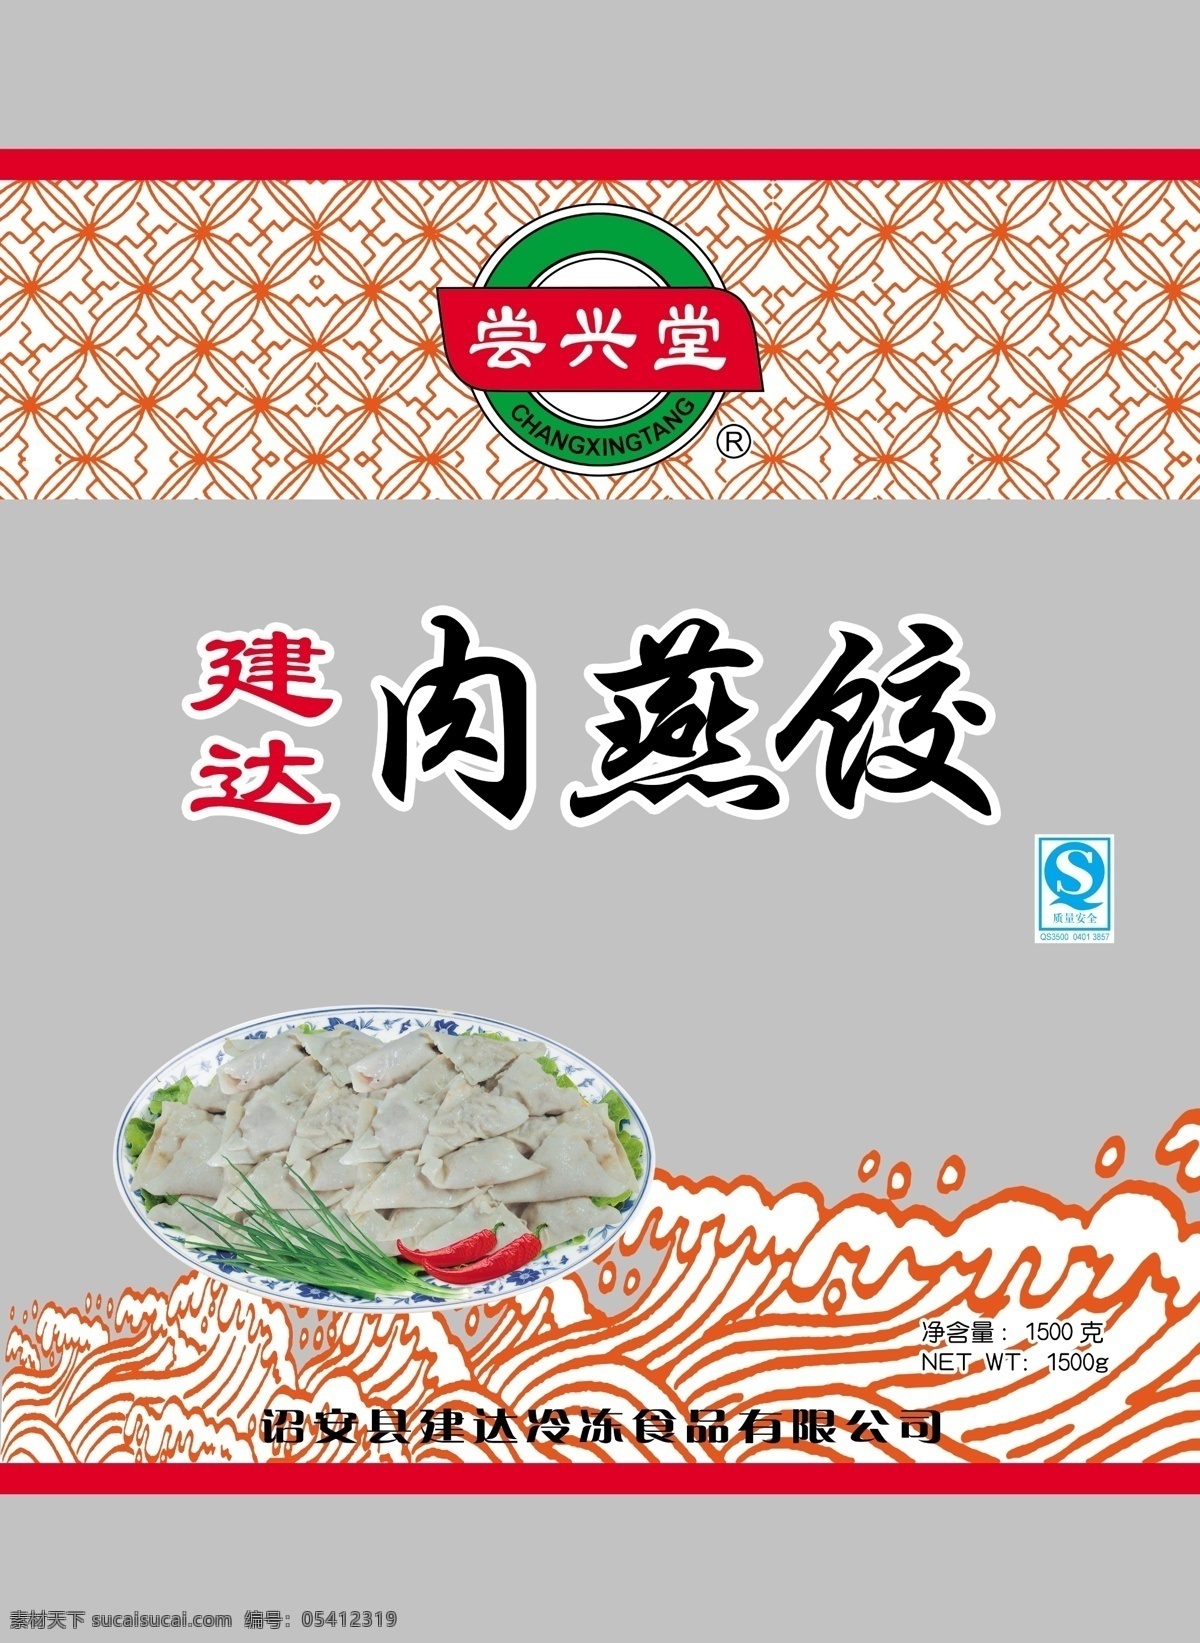 肉燕饺 饺子 食品包装 包装设计 海浪 食品 广告设计模板 源文件